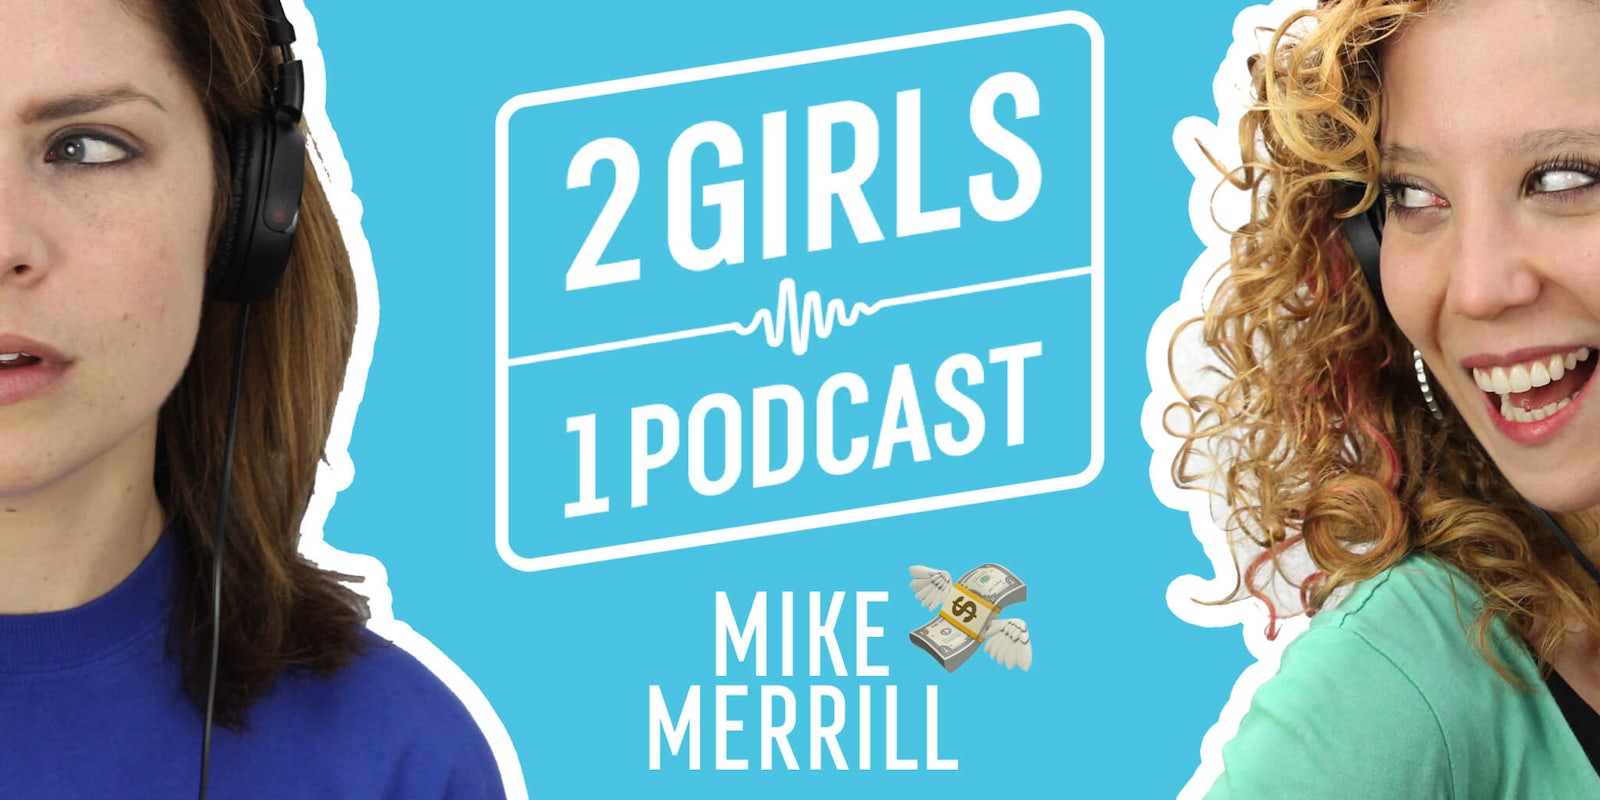 2 Girls 1 Podcast MIKE MERRILL